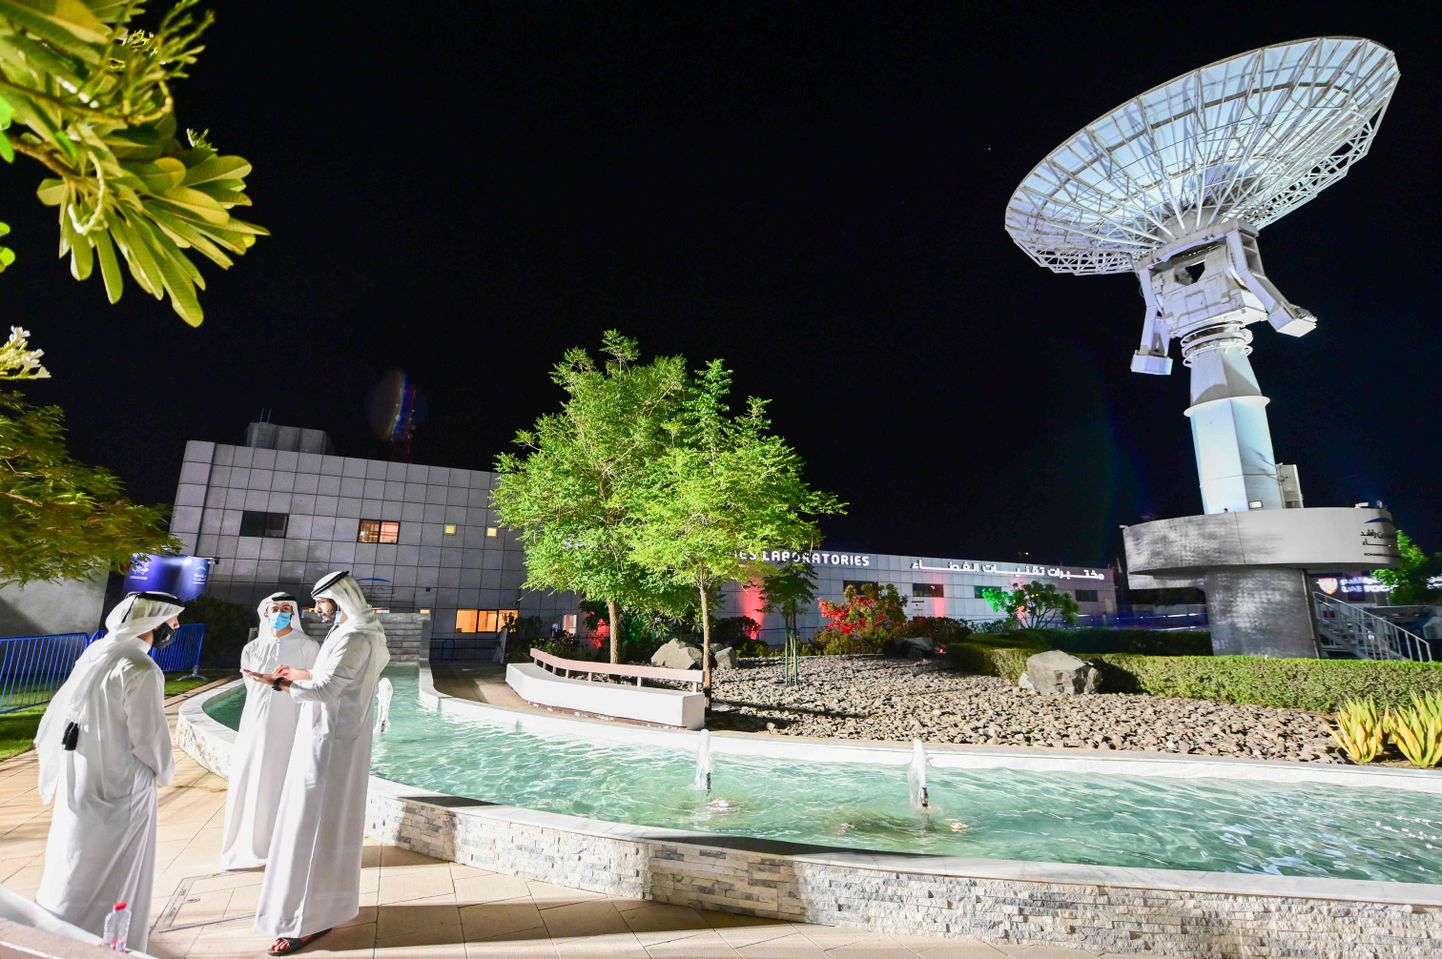 Pilt on illustratiivne. Pildil on Mohammed Bin Rashidi nimeline kosmoseagentuur Dubais.